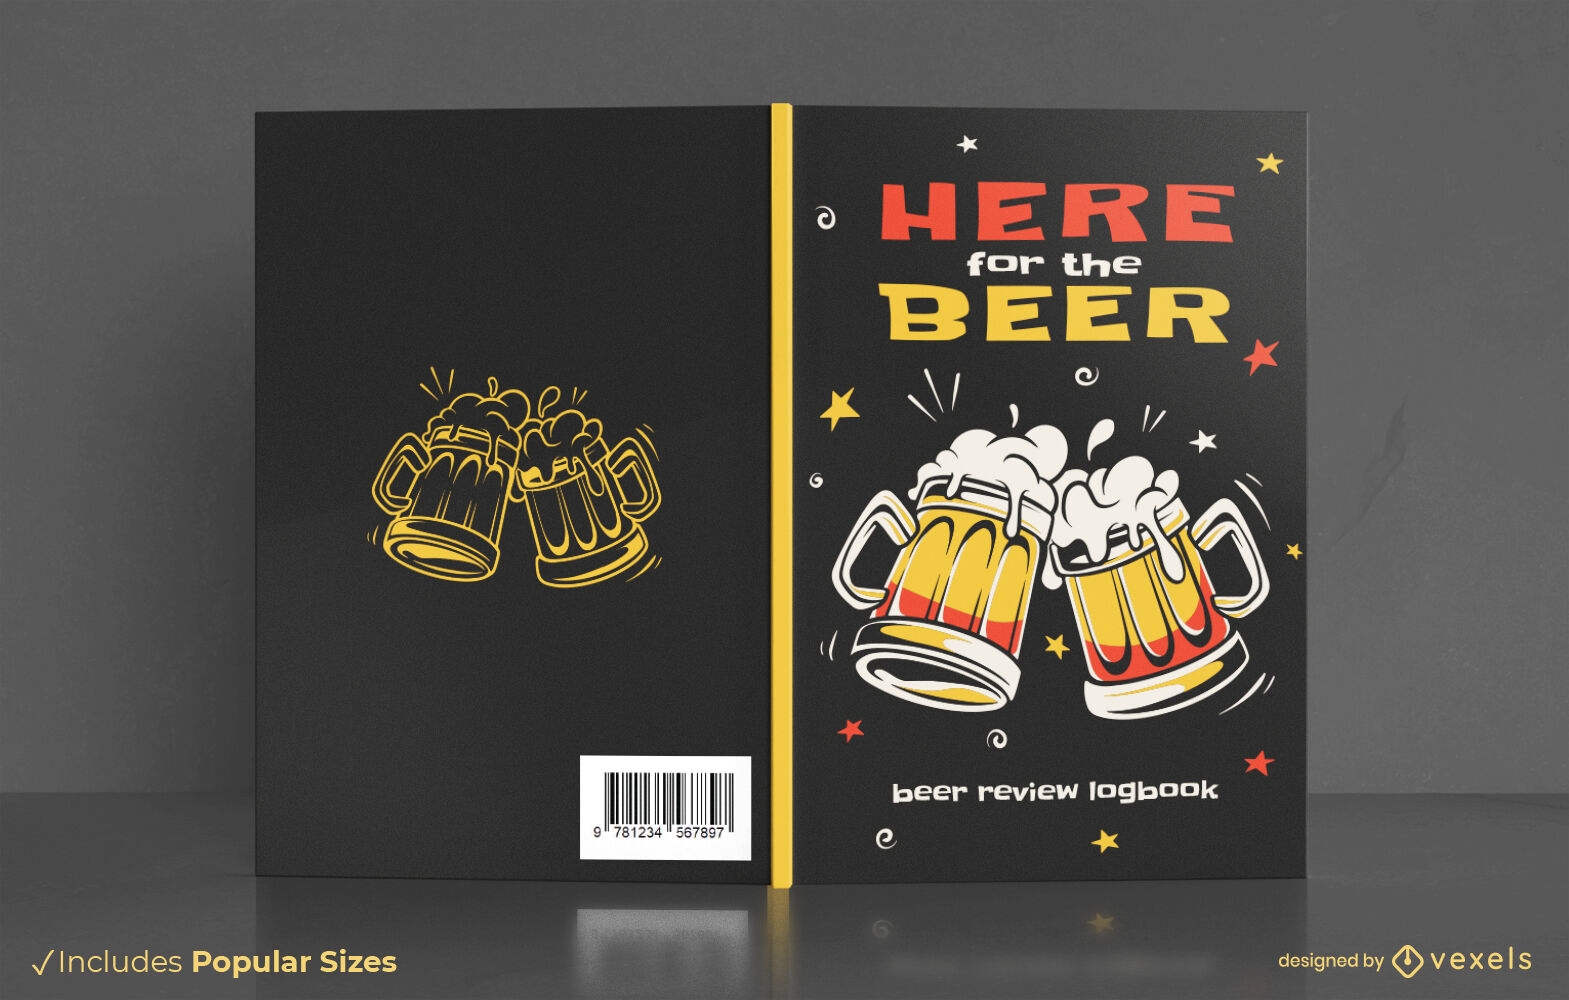 Dise?o de portada de libro de bebidas alcoh?licas de cerveza.